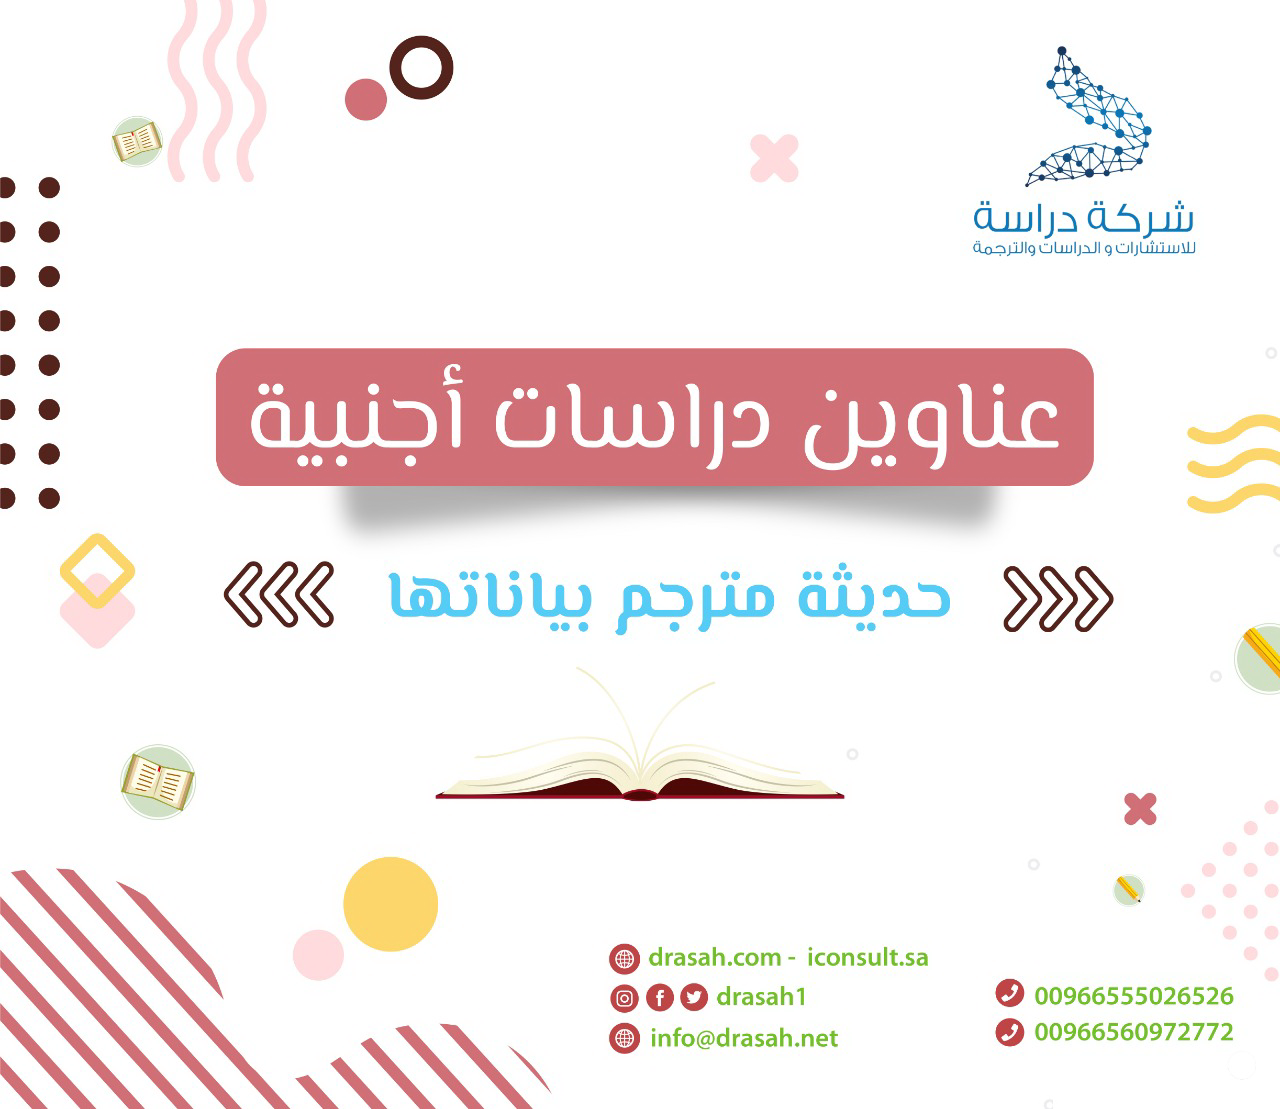 عناوين دراسات سابقة عربية حول التعلم التشاركي عبر الويب وقيم المواطنة الرقمية